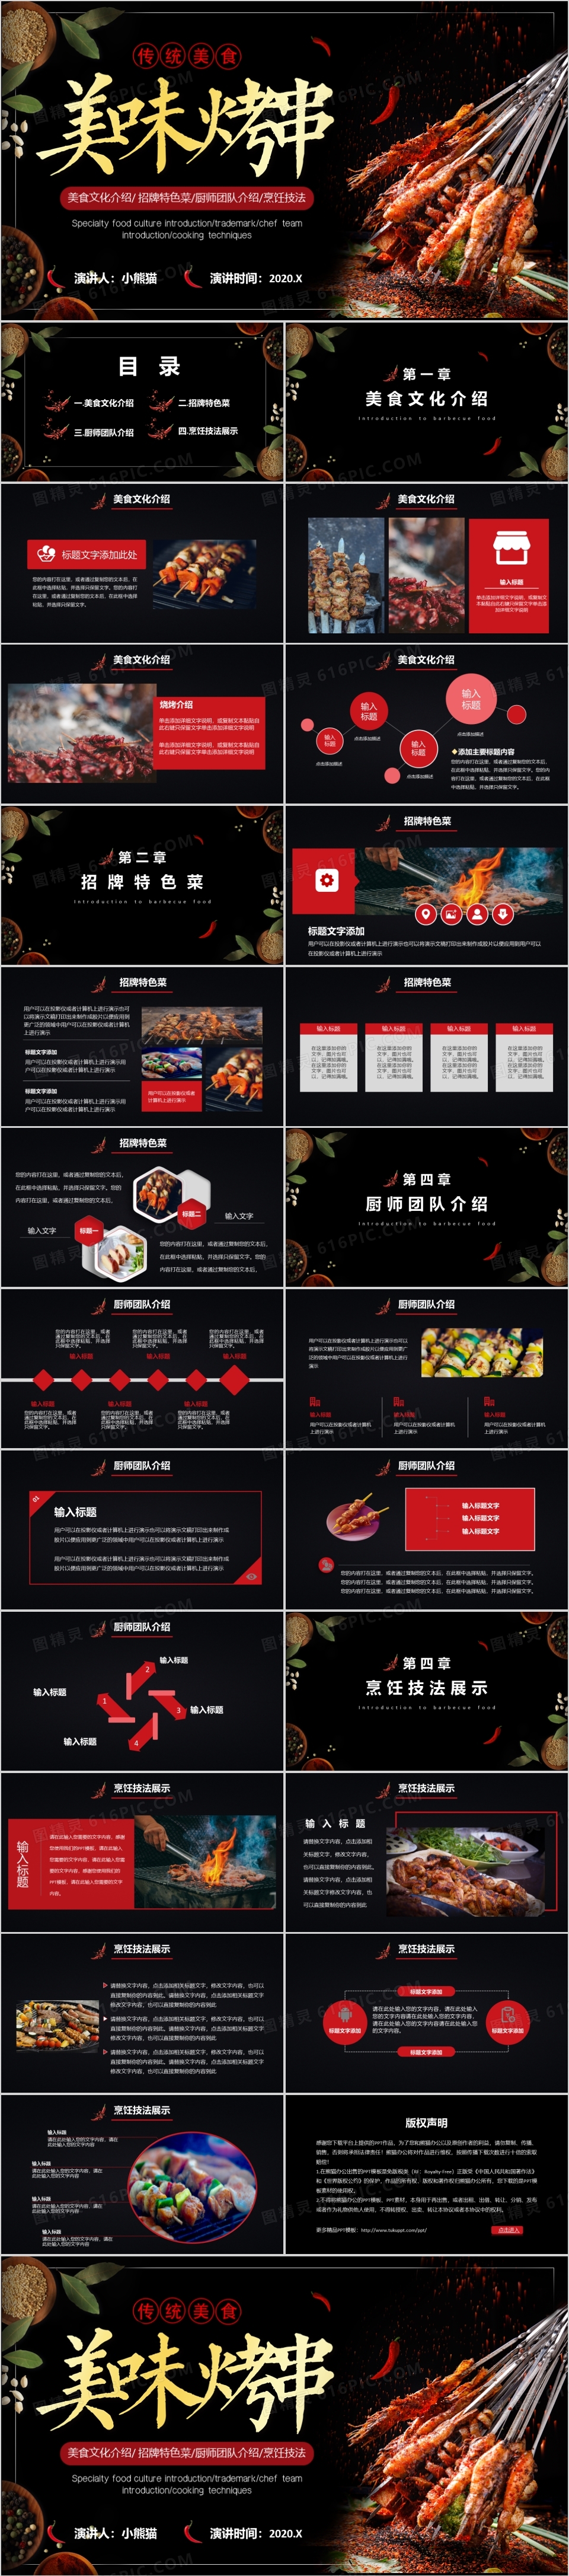 黑色大气中国美食烧烤招牌特色介绍通用PPT模板